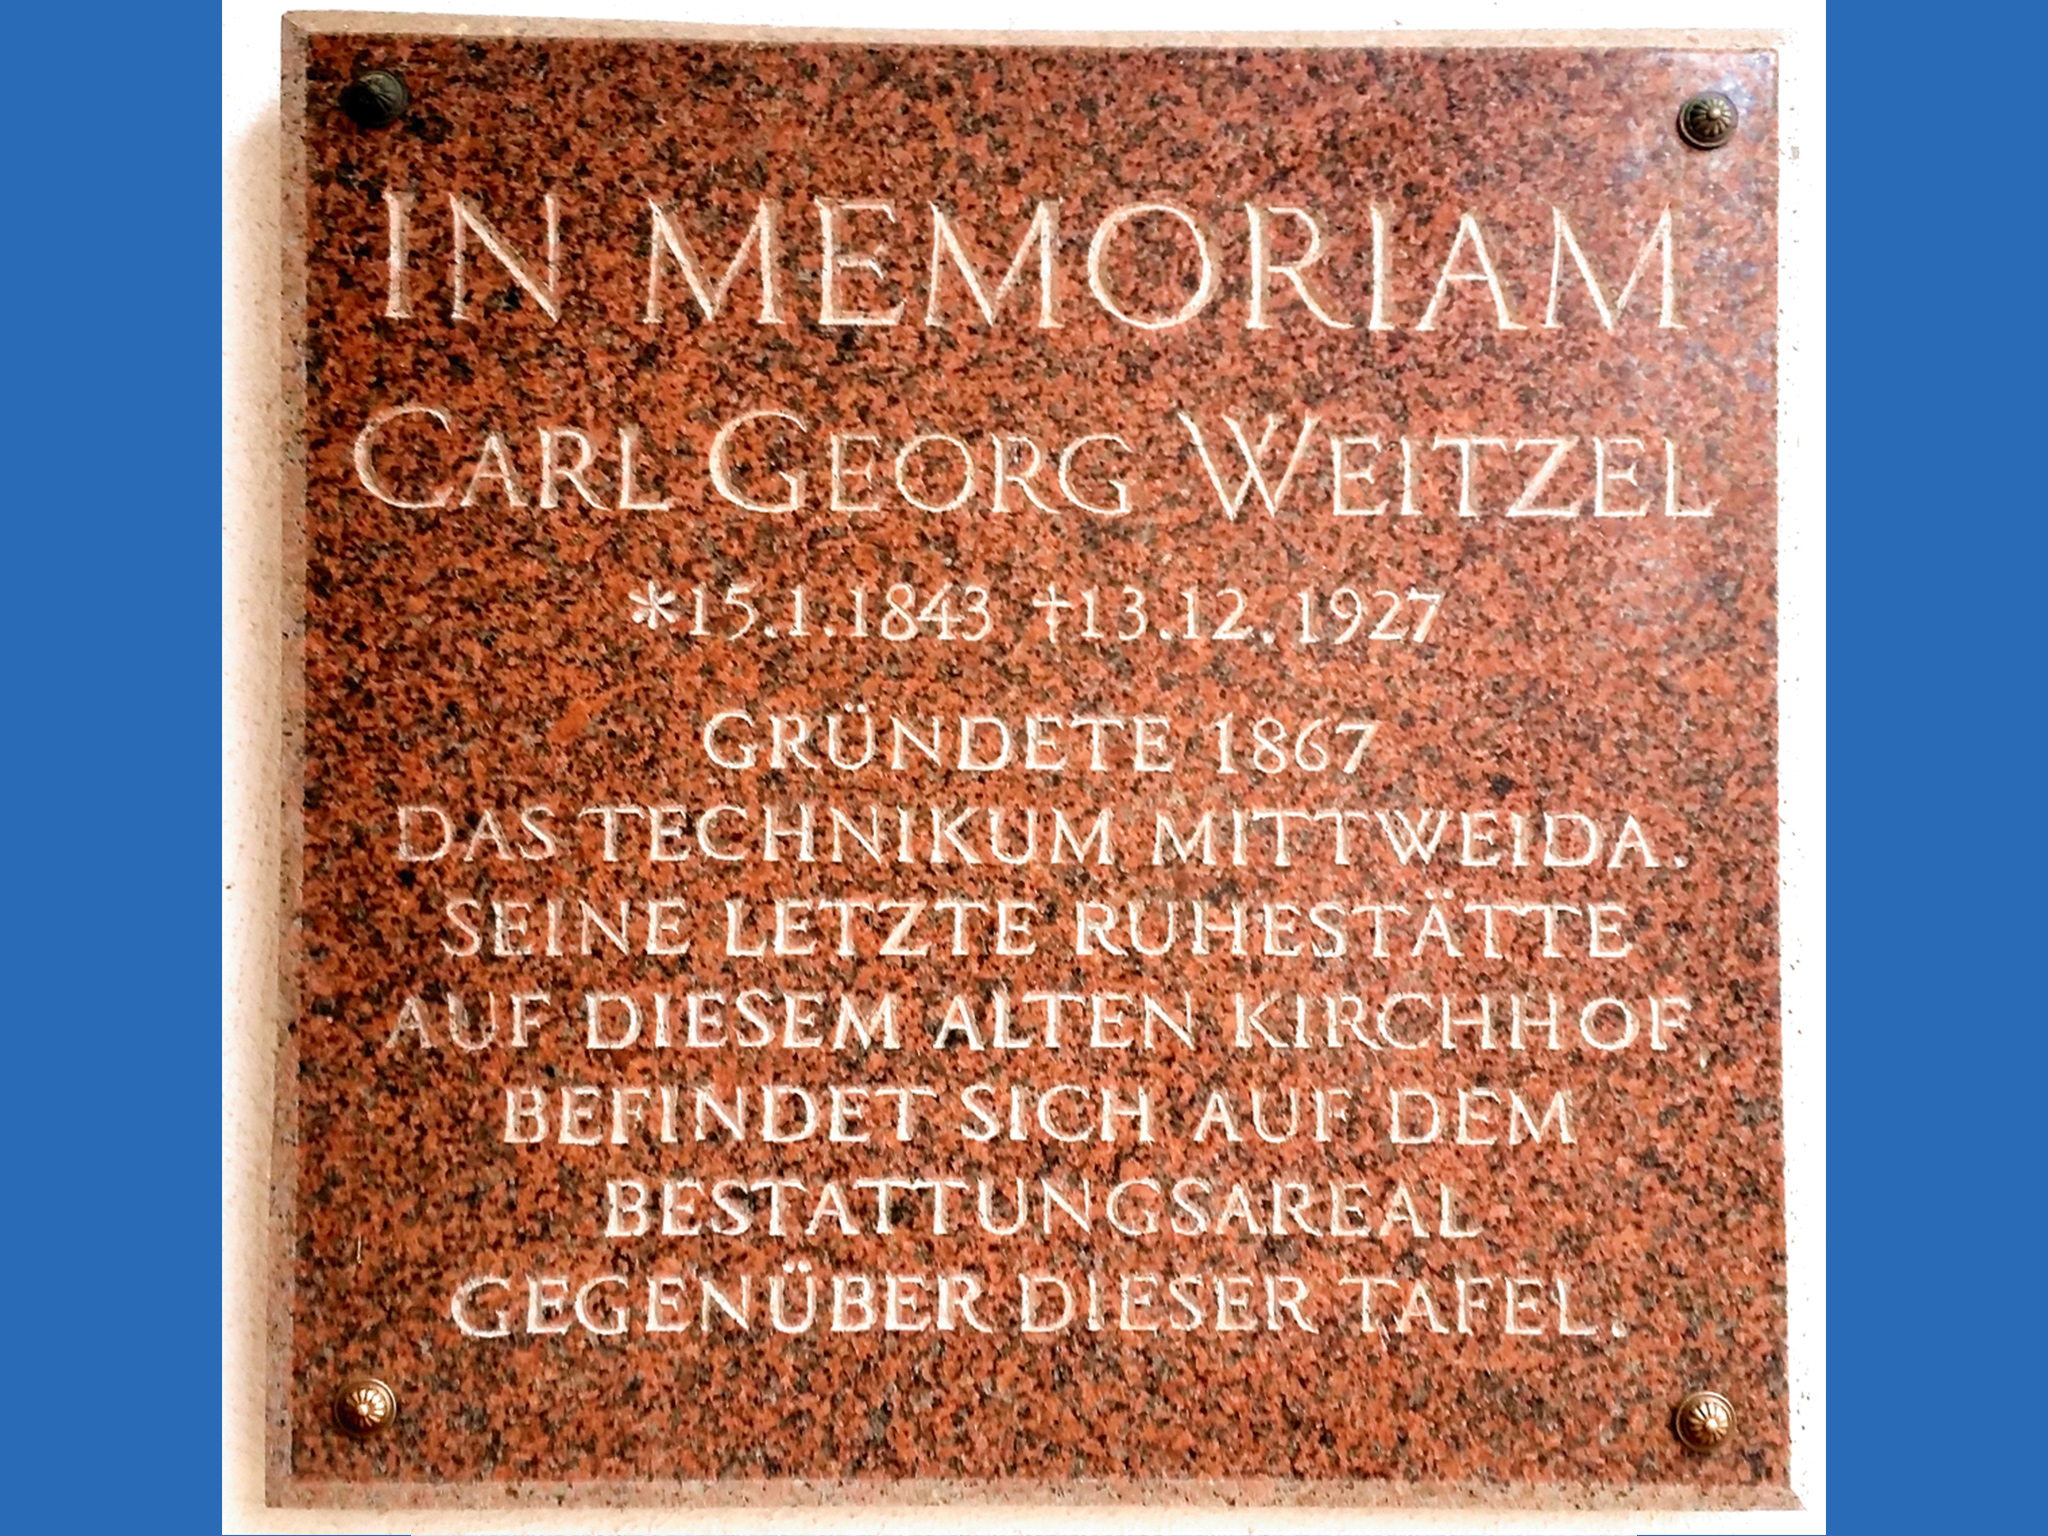 Mit einer Tafel ehrt die Stadt Mittweida auf dem Friedhof Carl Georg Weitzel. Foto: Hansgeorg Hofmann